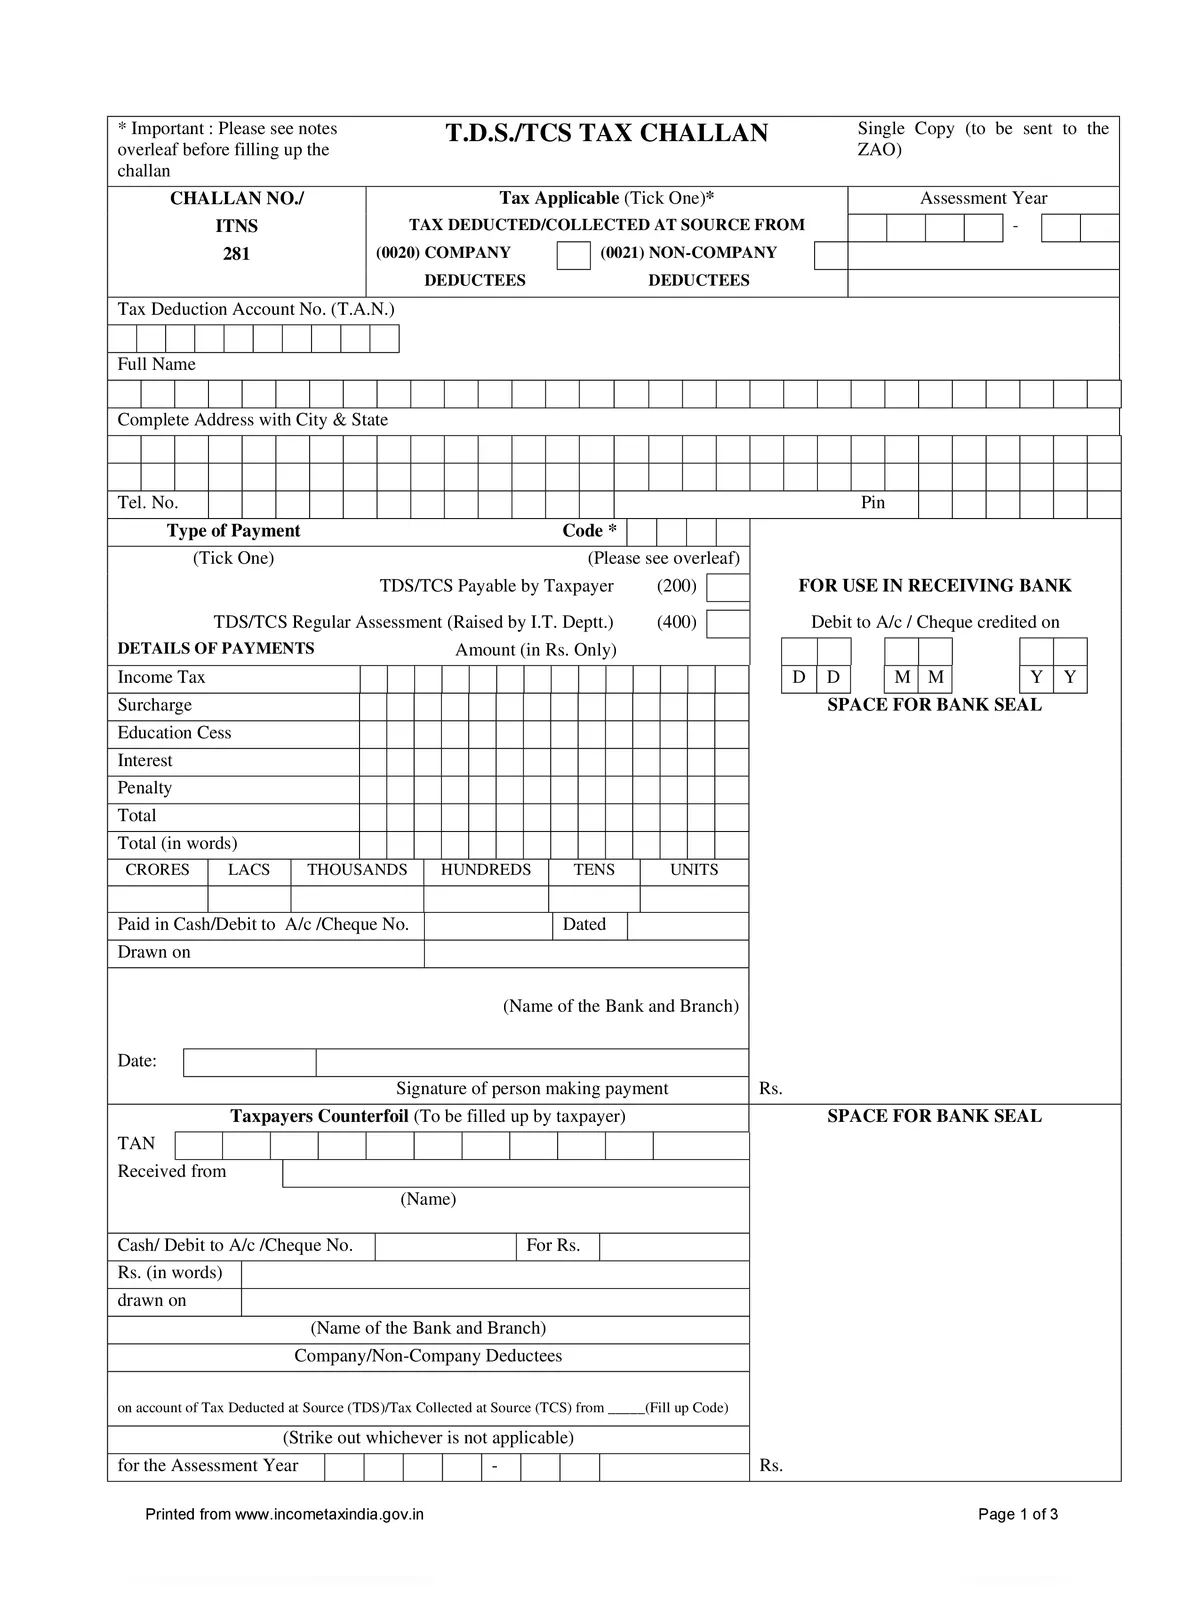 TDS/TCS Tax Challan Form 281 PDF InstaPDF